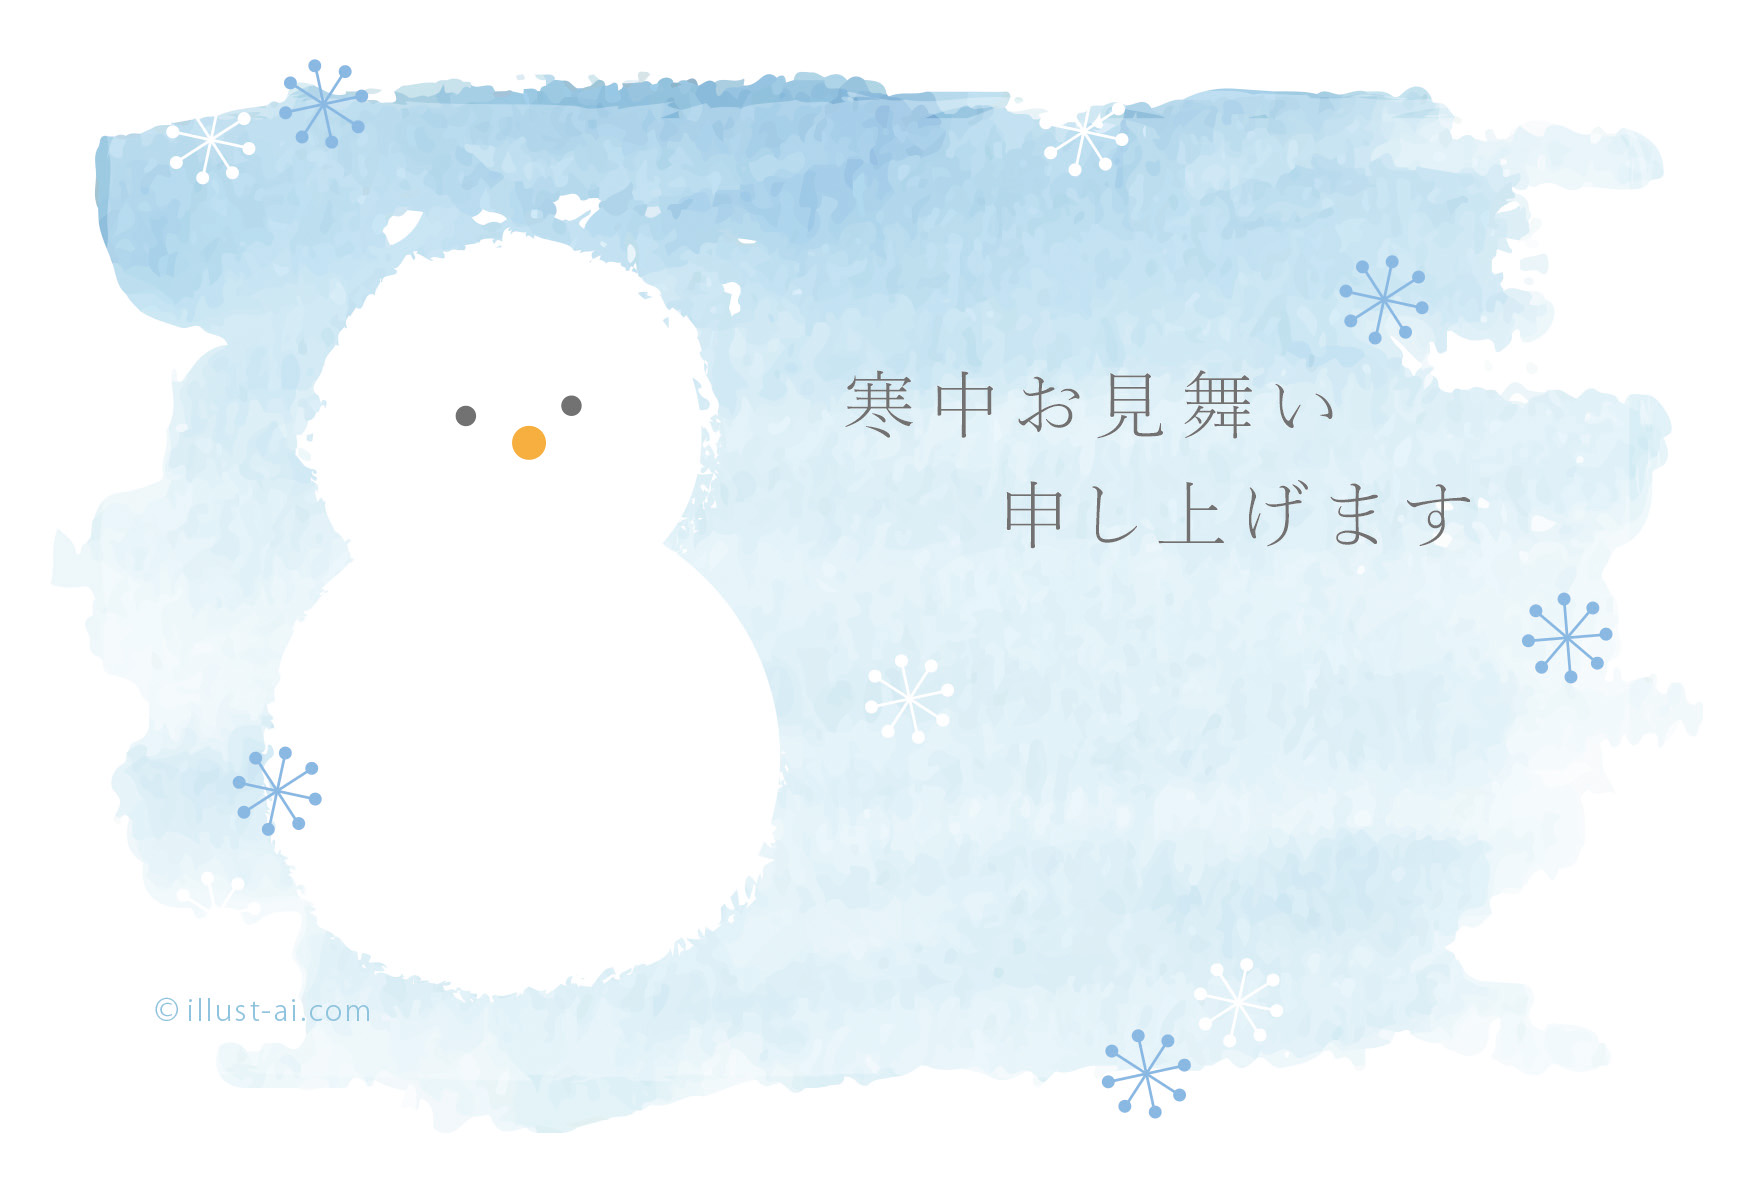 エレガント雪だるま 冬 イラスト 簡単 かわいいディズニー画像